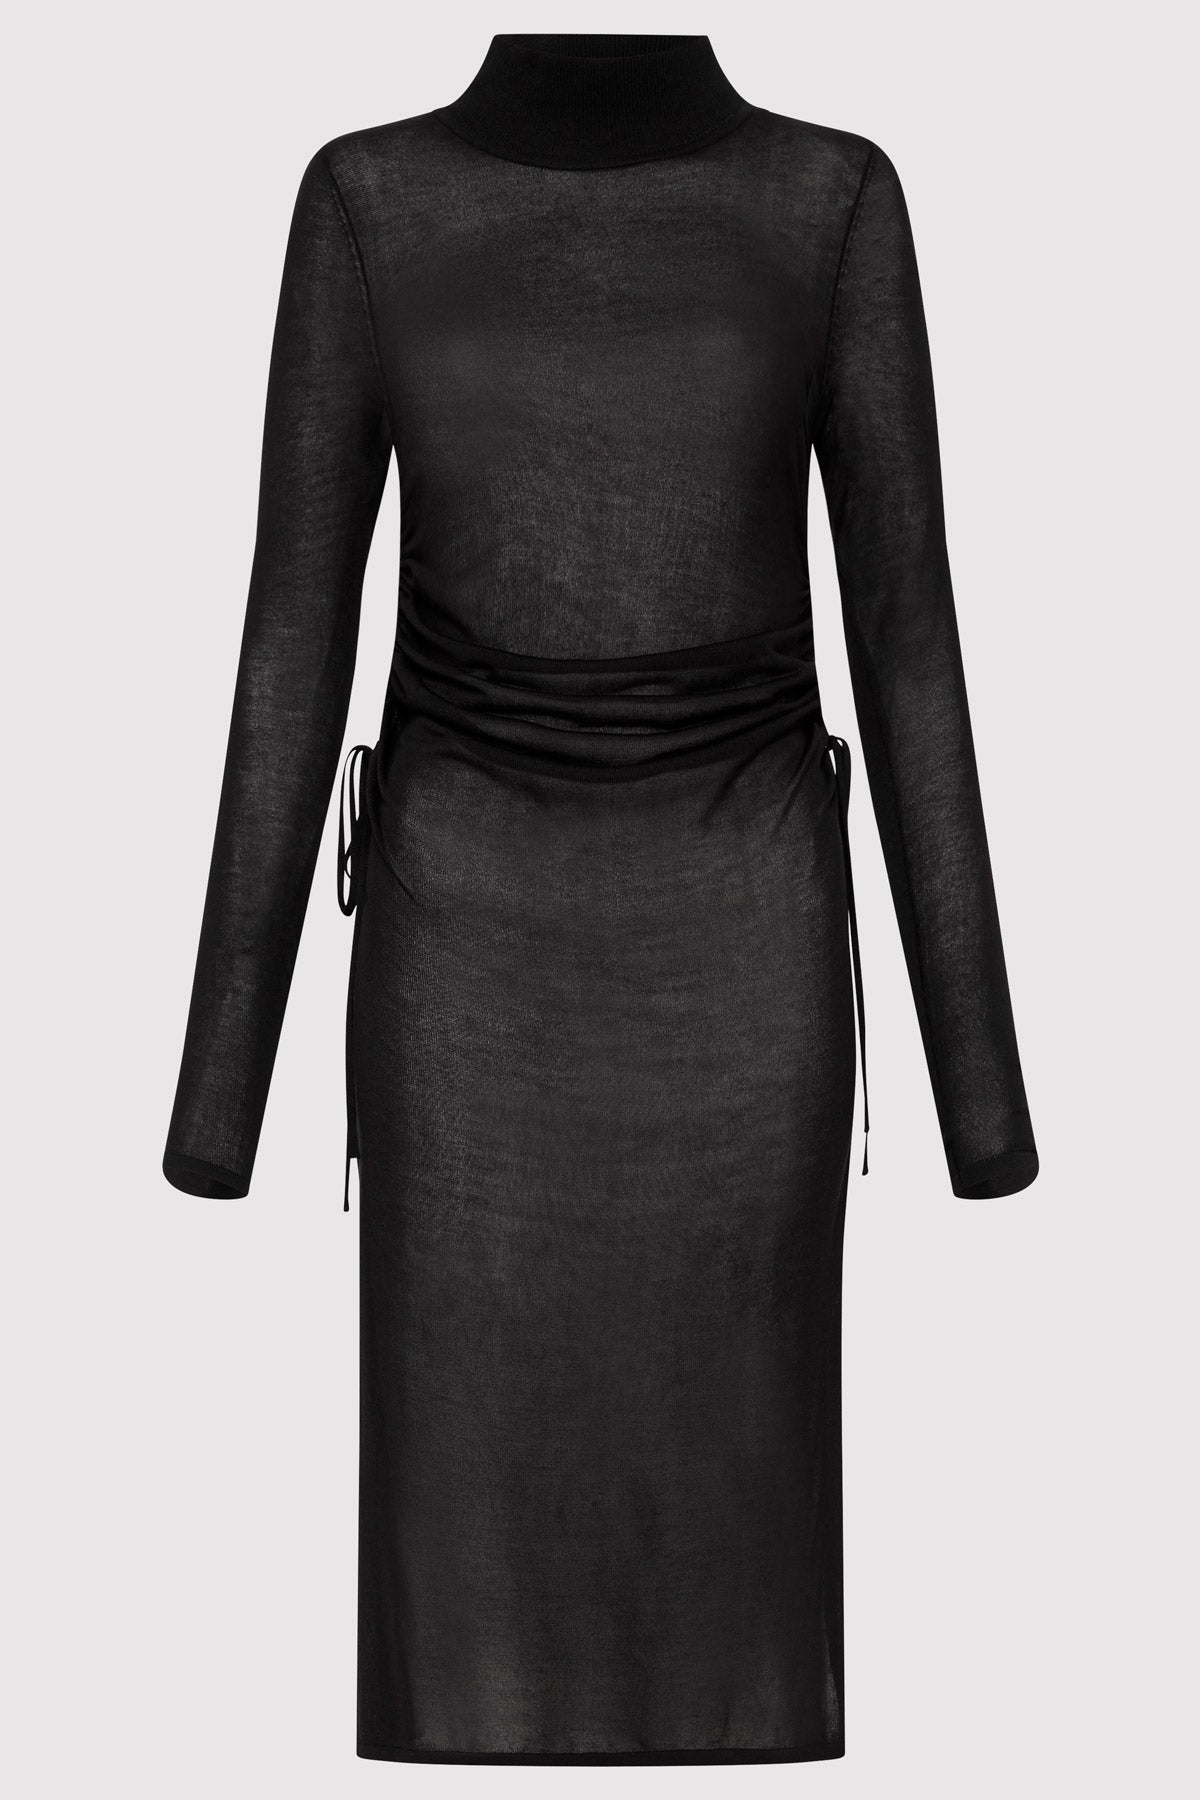 Sheer Ruched Dress - Black